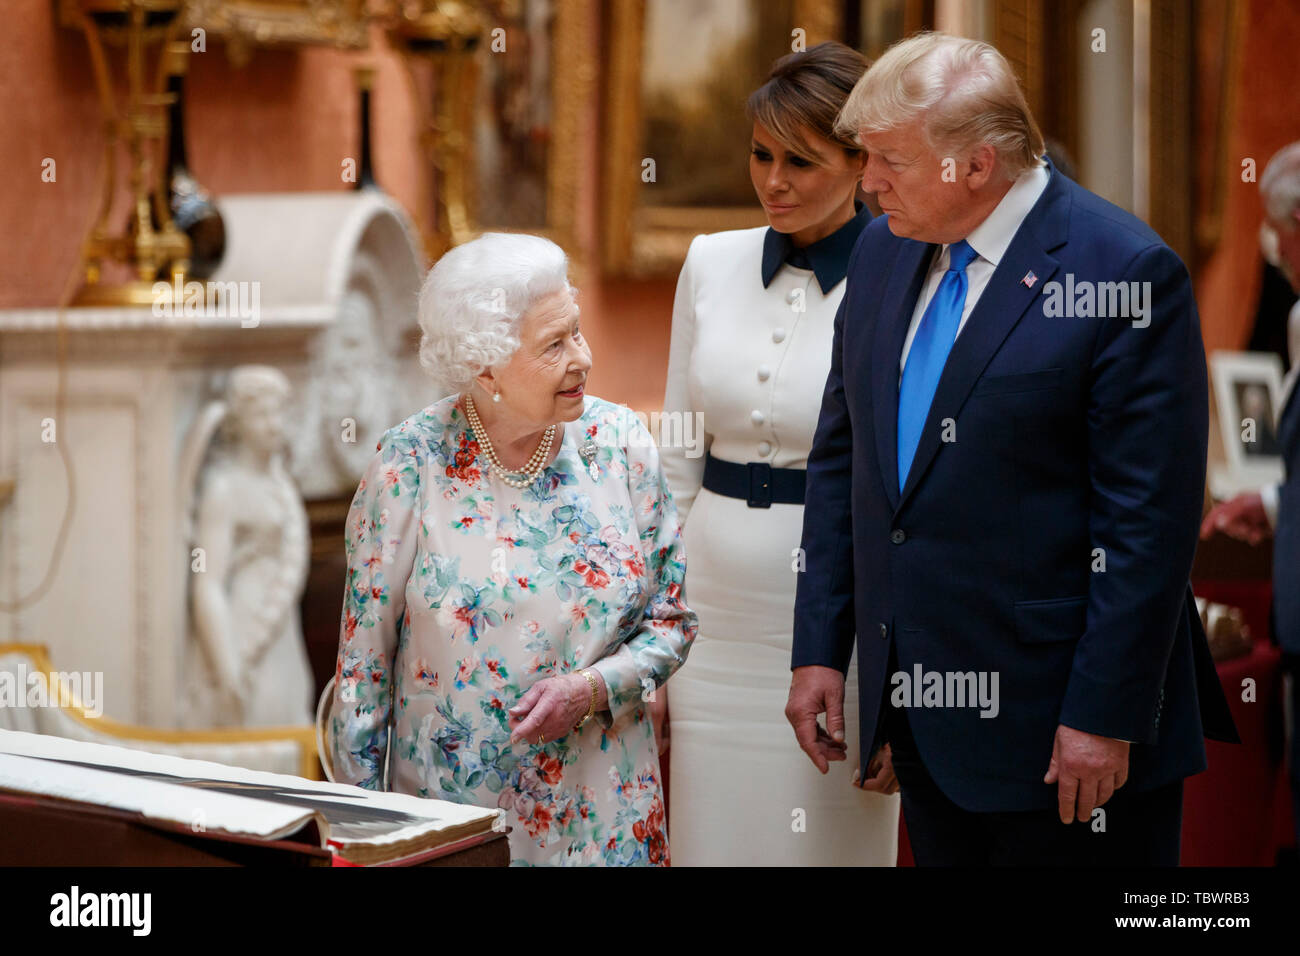 La reine Elizabeth II avec le Président Donald Trump voir une exposition spéciale dans la Galerie d'articles de la Collection Royale d'importance historique pour les États-Unis, à la suite d'un déjeuner privé au Palais de Buckingham à Londres, le premier jour de sa visite d'Etat de trois jours au Royaume-Uni. Banque D'Images